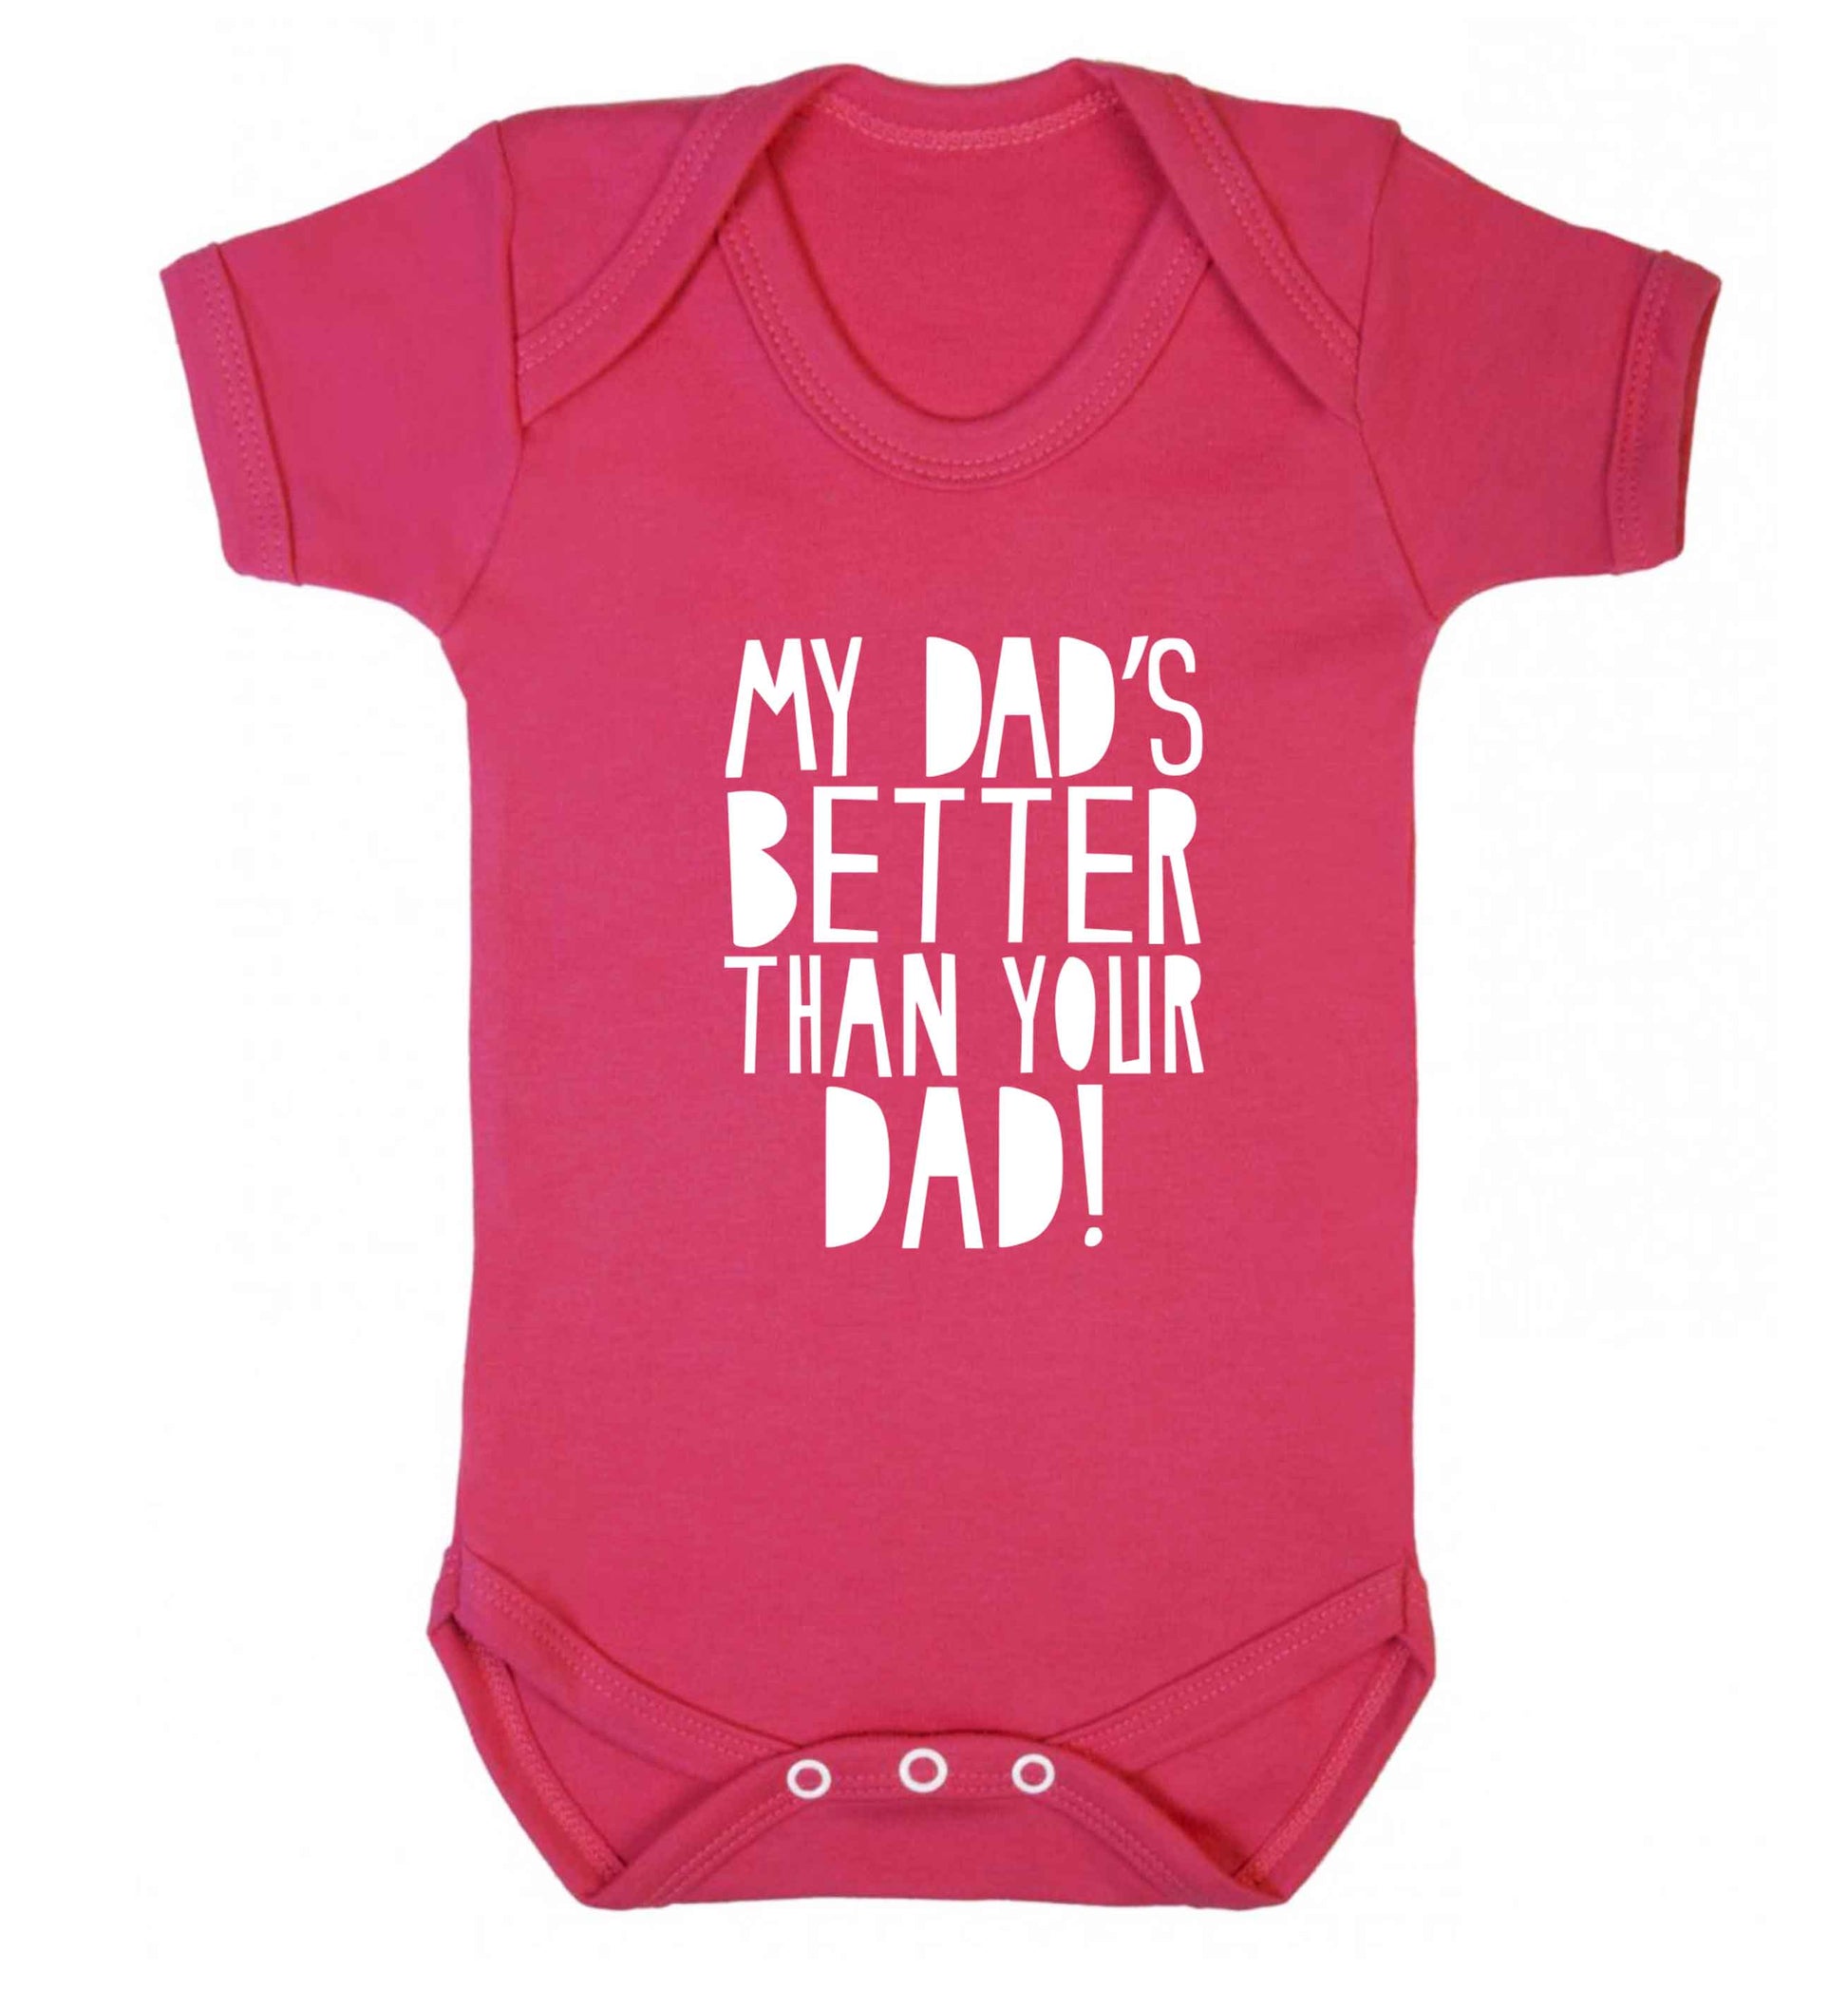 My dad's better than your dad! baby vest dark pink 18-24 months